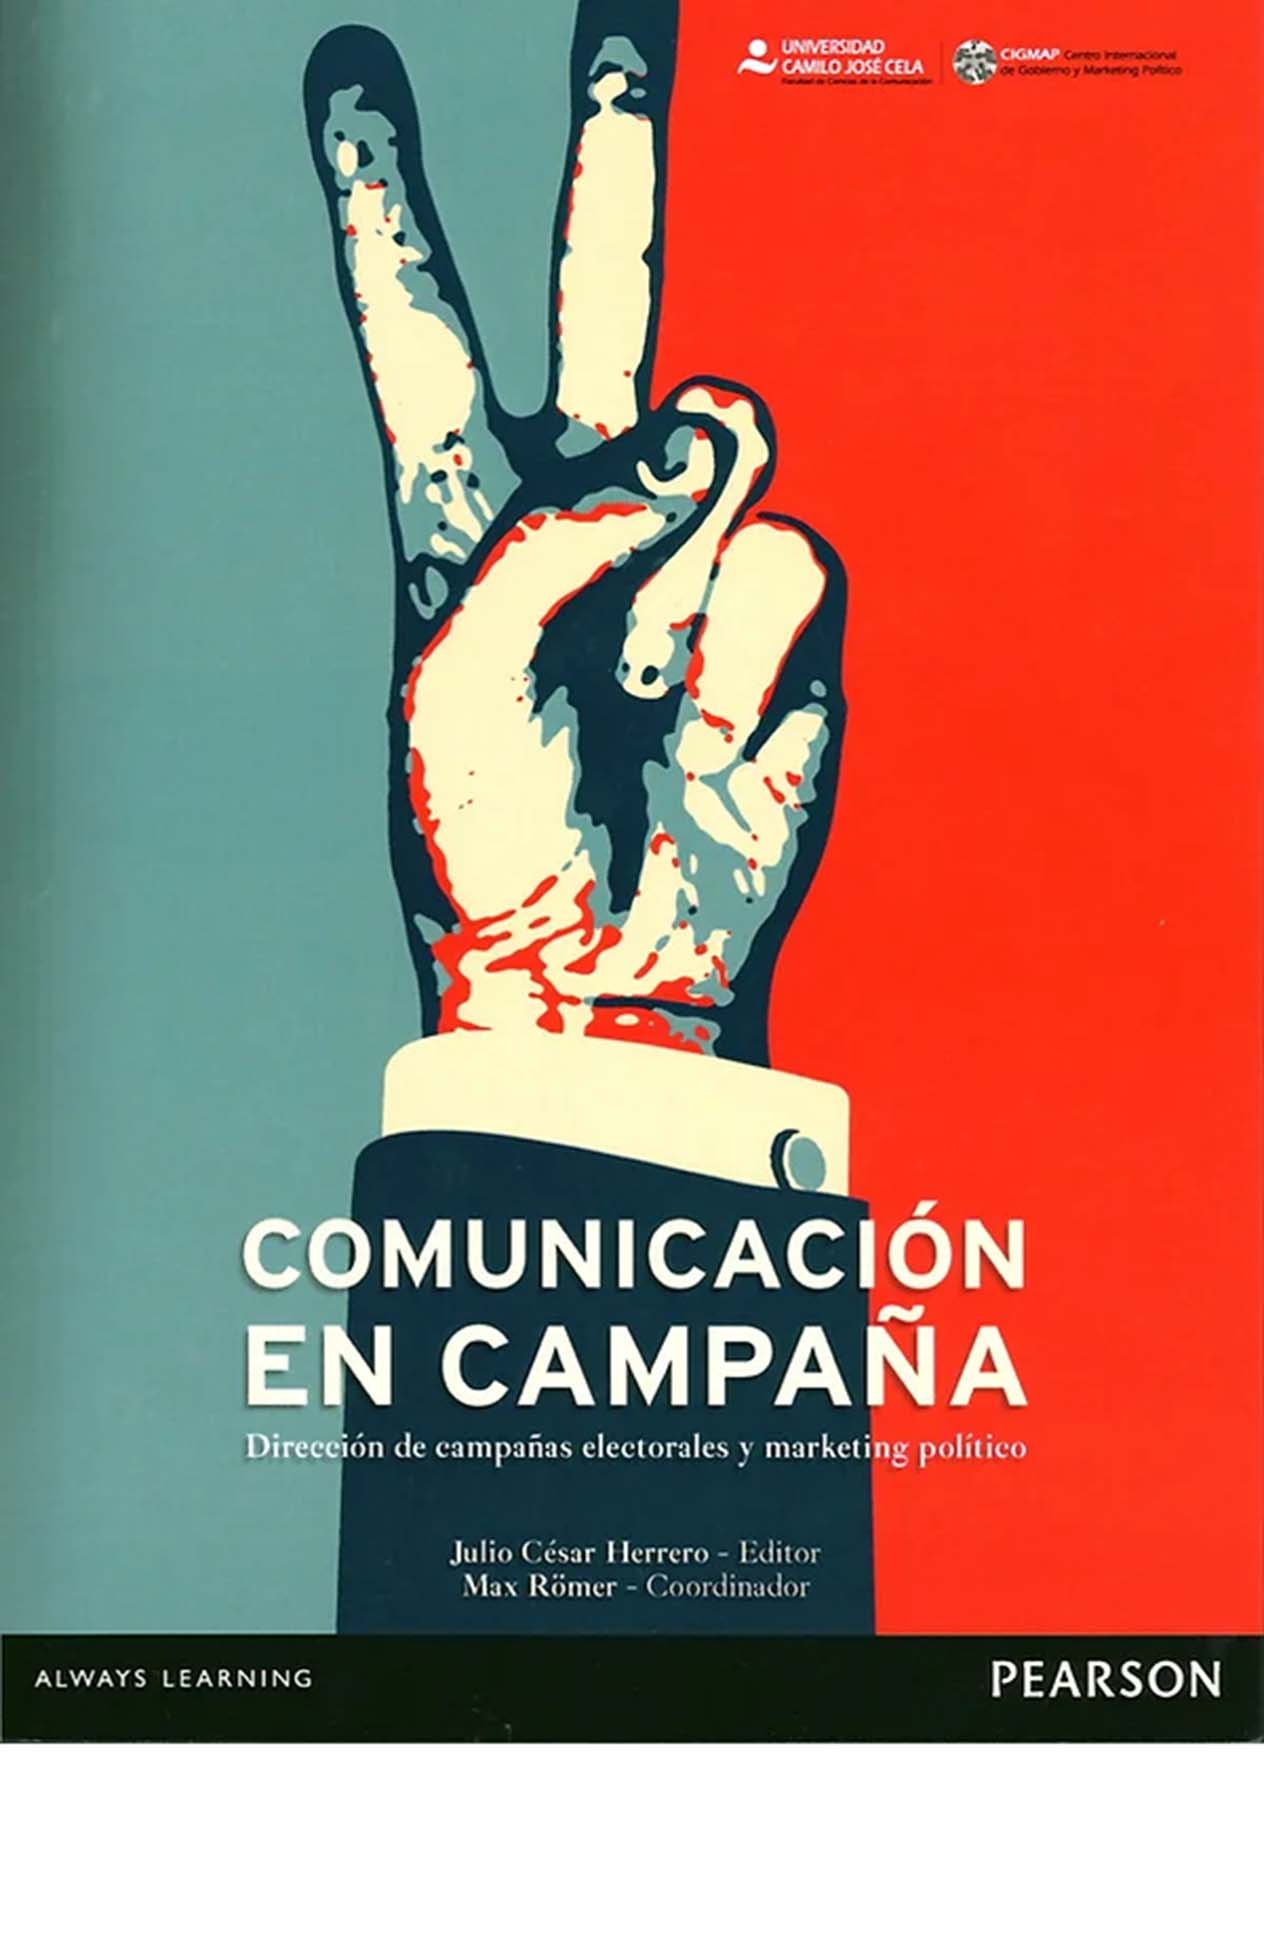 Portada del libro "Comunicación en campaña" de Julio César Herrero